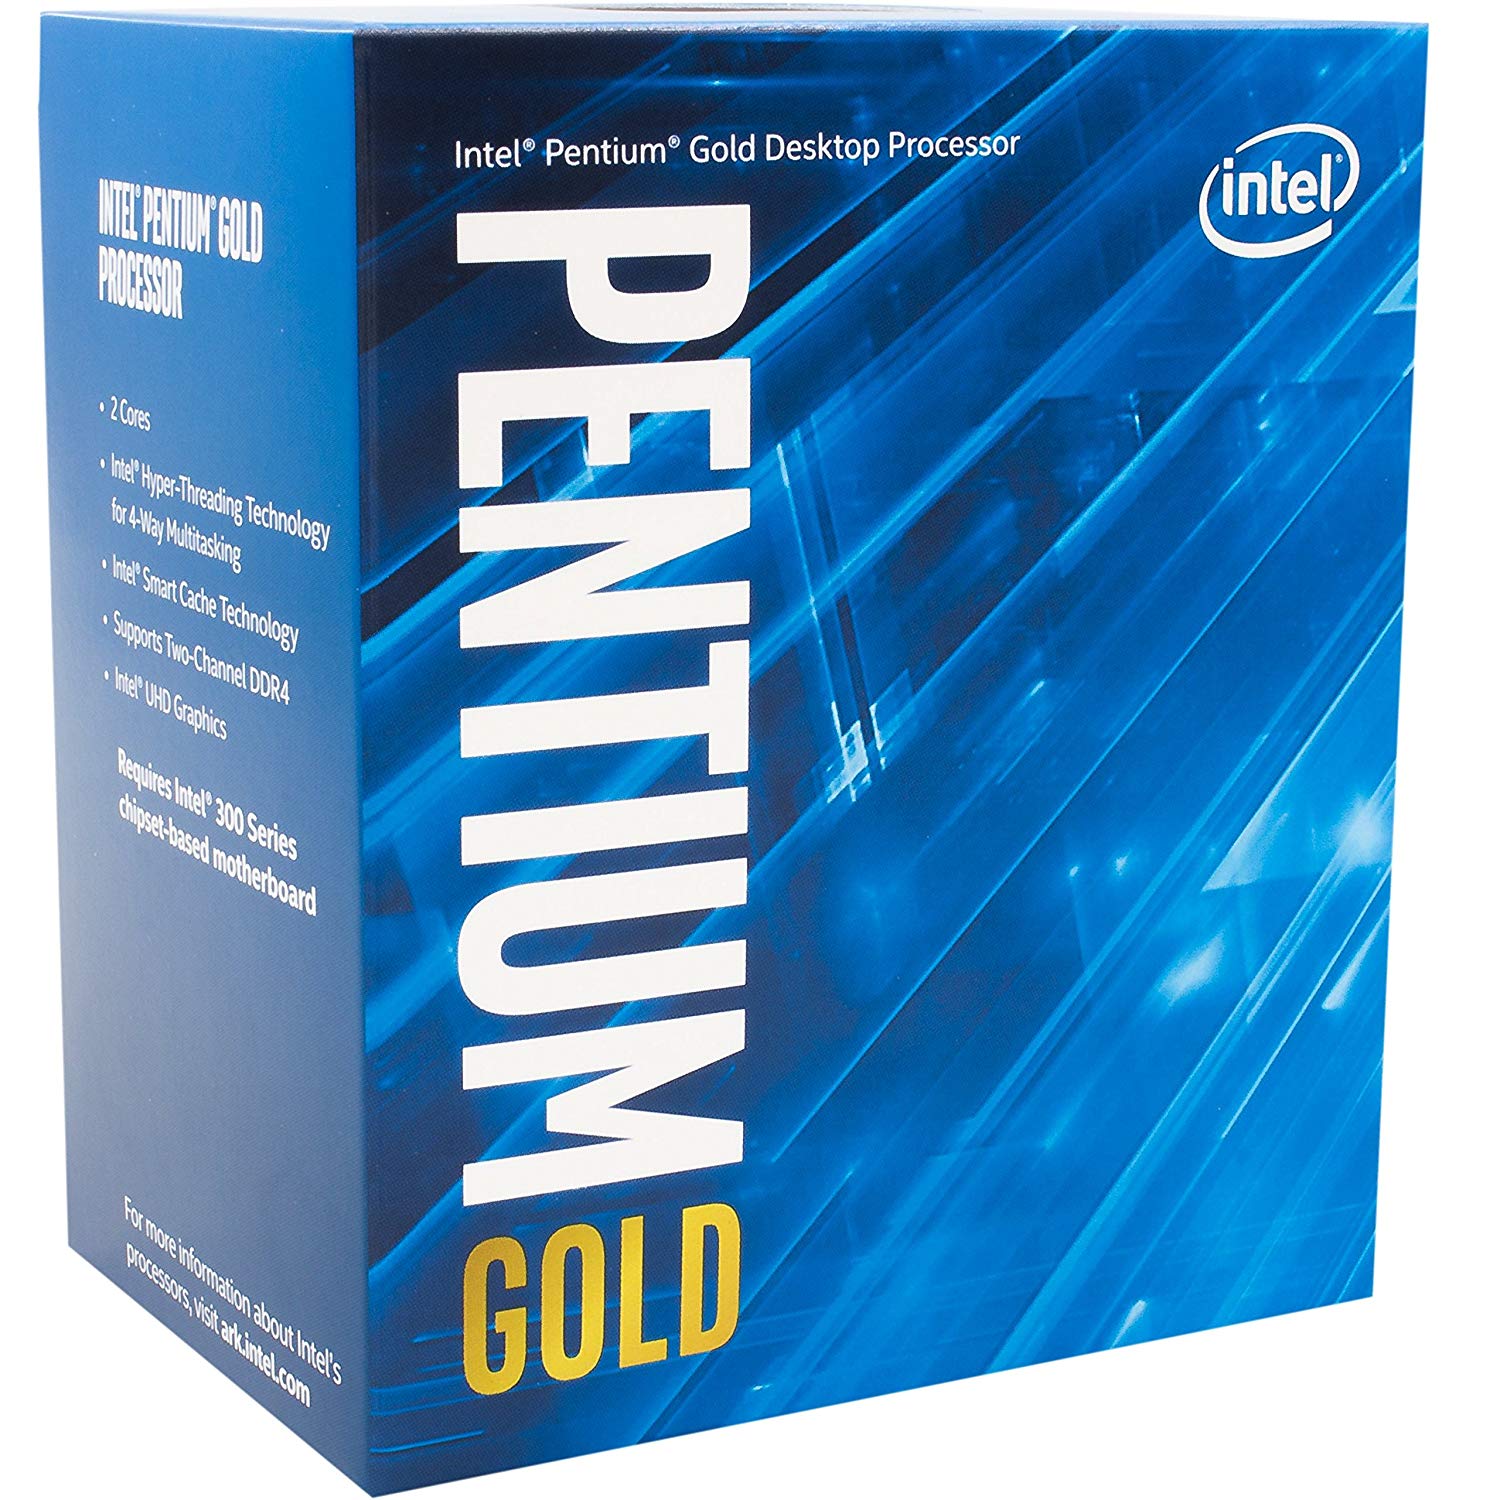 Pentium Gold